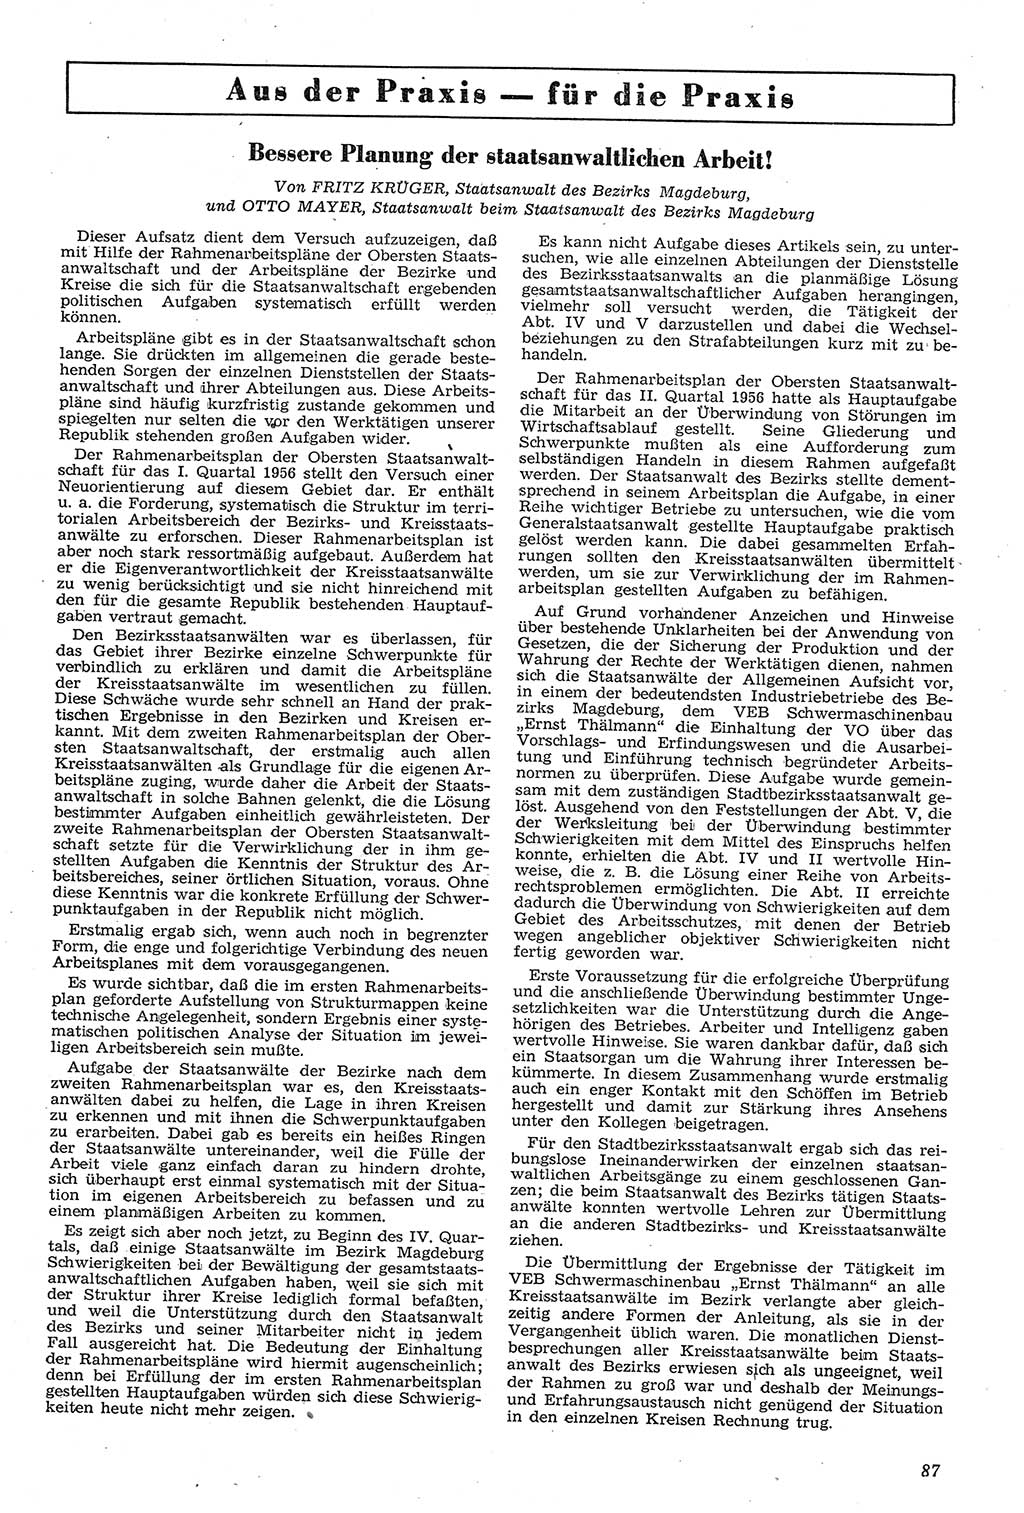 Neue Justiz (NJ), Zeitschrift für Recht und Rechtswissenschaft [Deutsche Demokratische Republik (DDR)], 11. Jahrgang 1957, Seite 87 (NJ DDR 1957, S. 87)